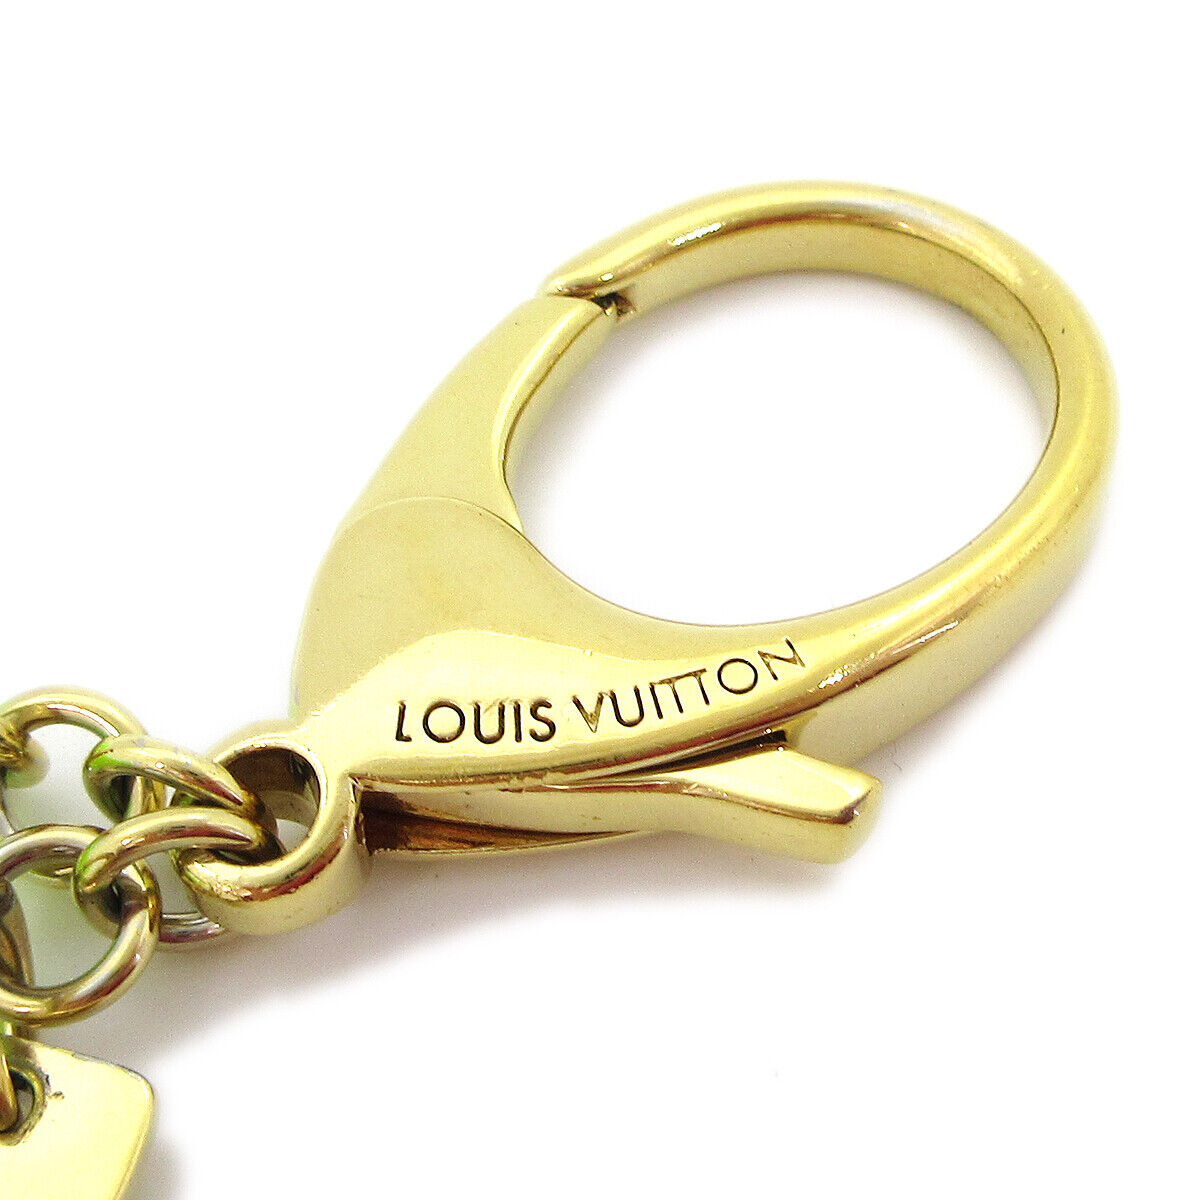 LOUIS VUITTON Bijoux Sac Fetish Bag Charm Key Holder Key Ring Epi